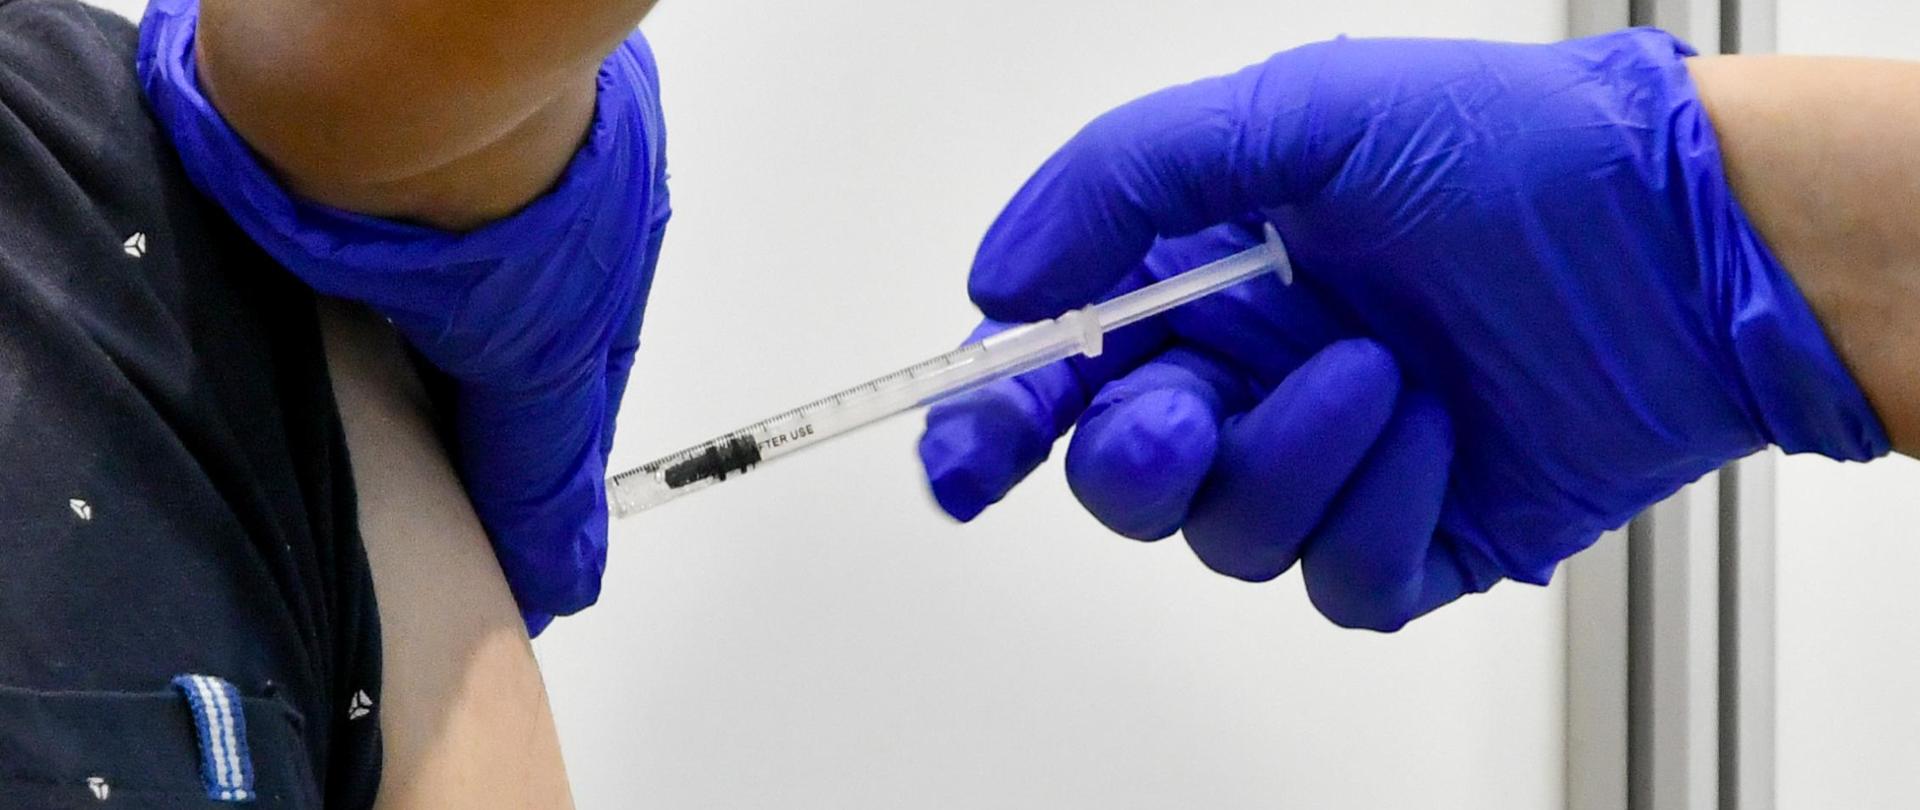 strzykawka ze szczepionką